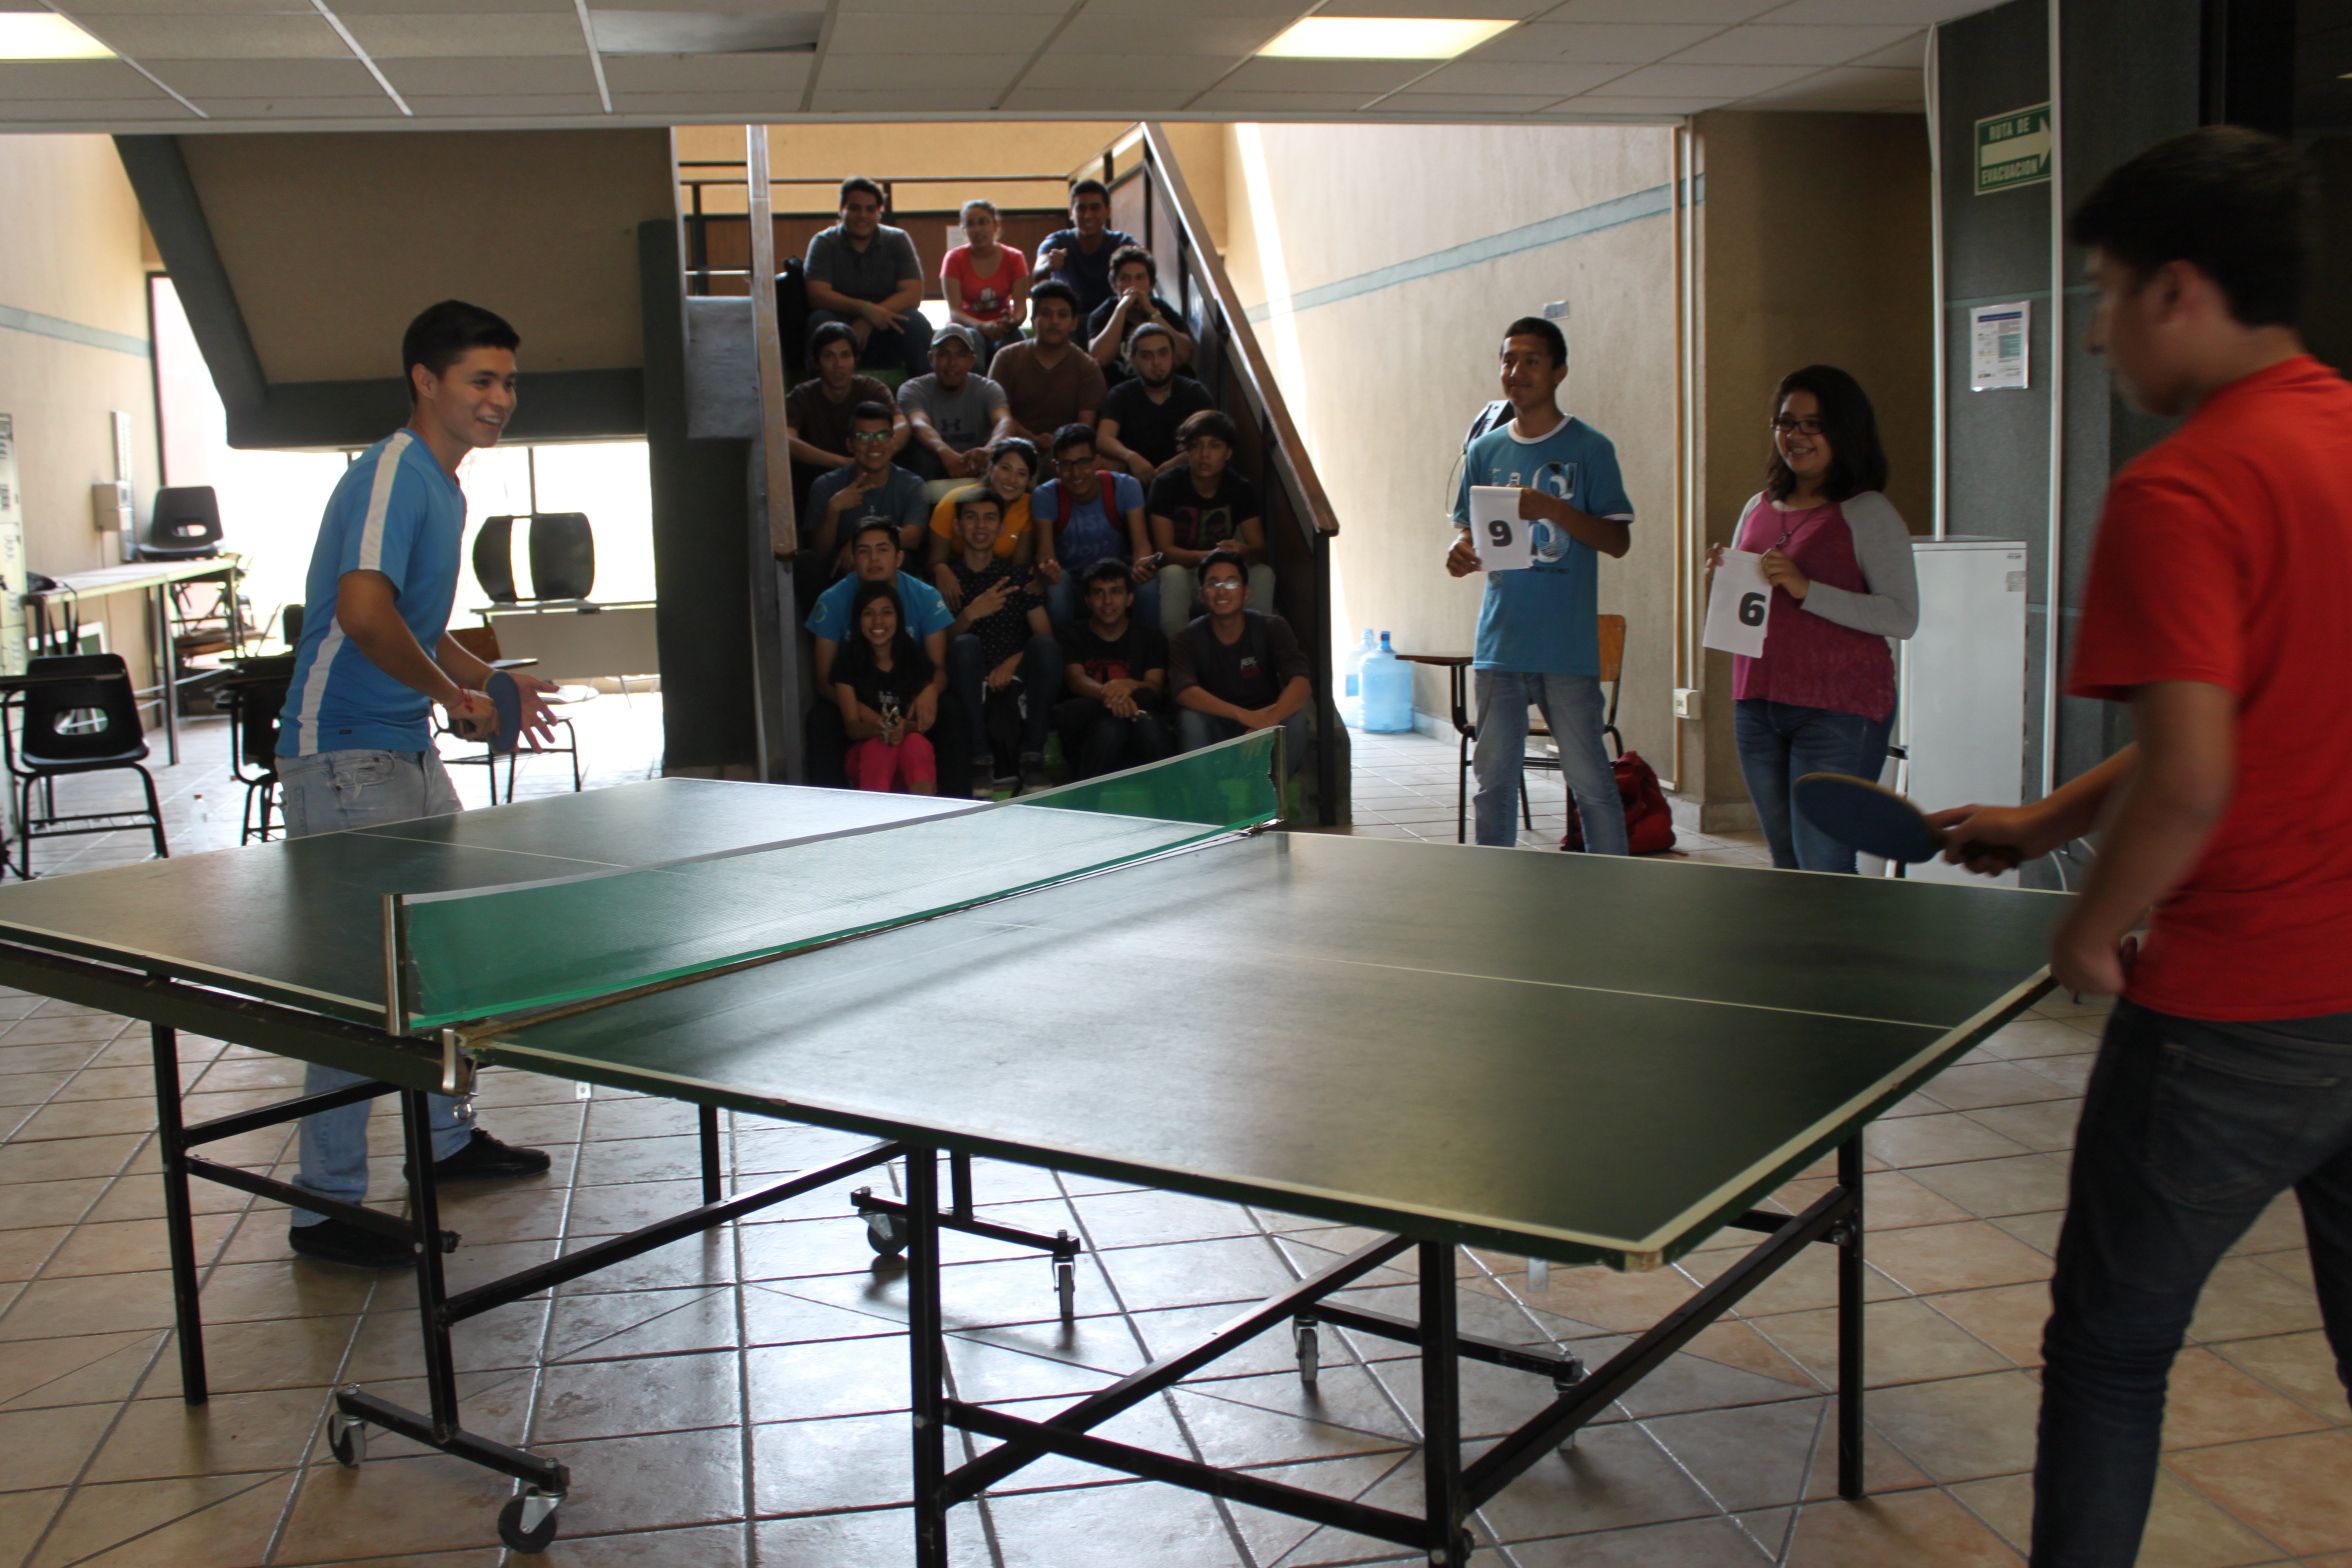 La imagen muestra a estudiantes de la universidad jugando pin pon.